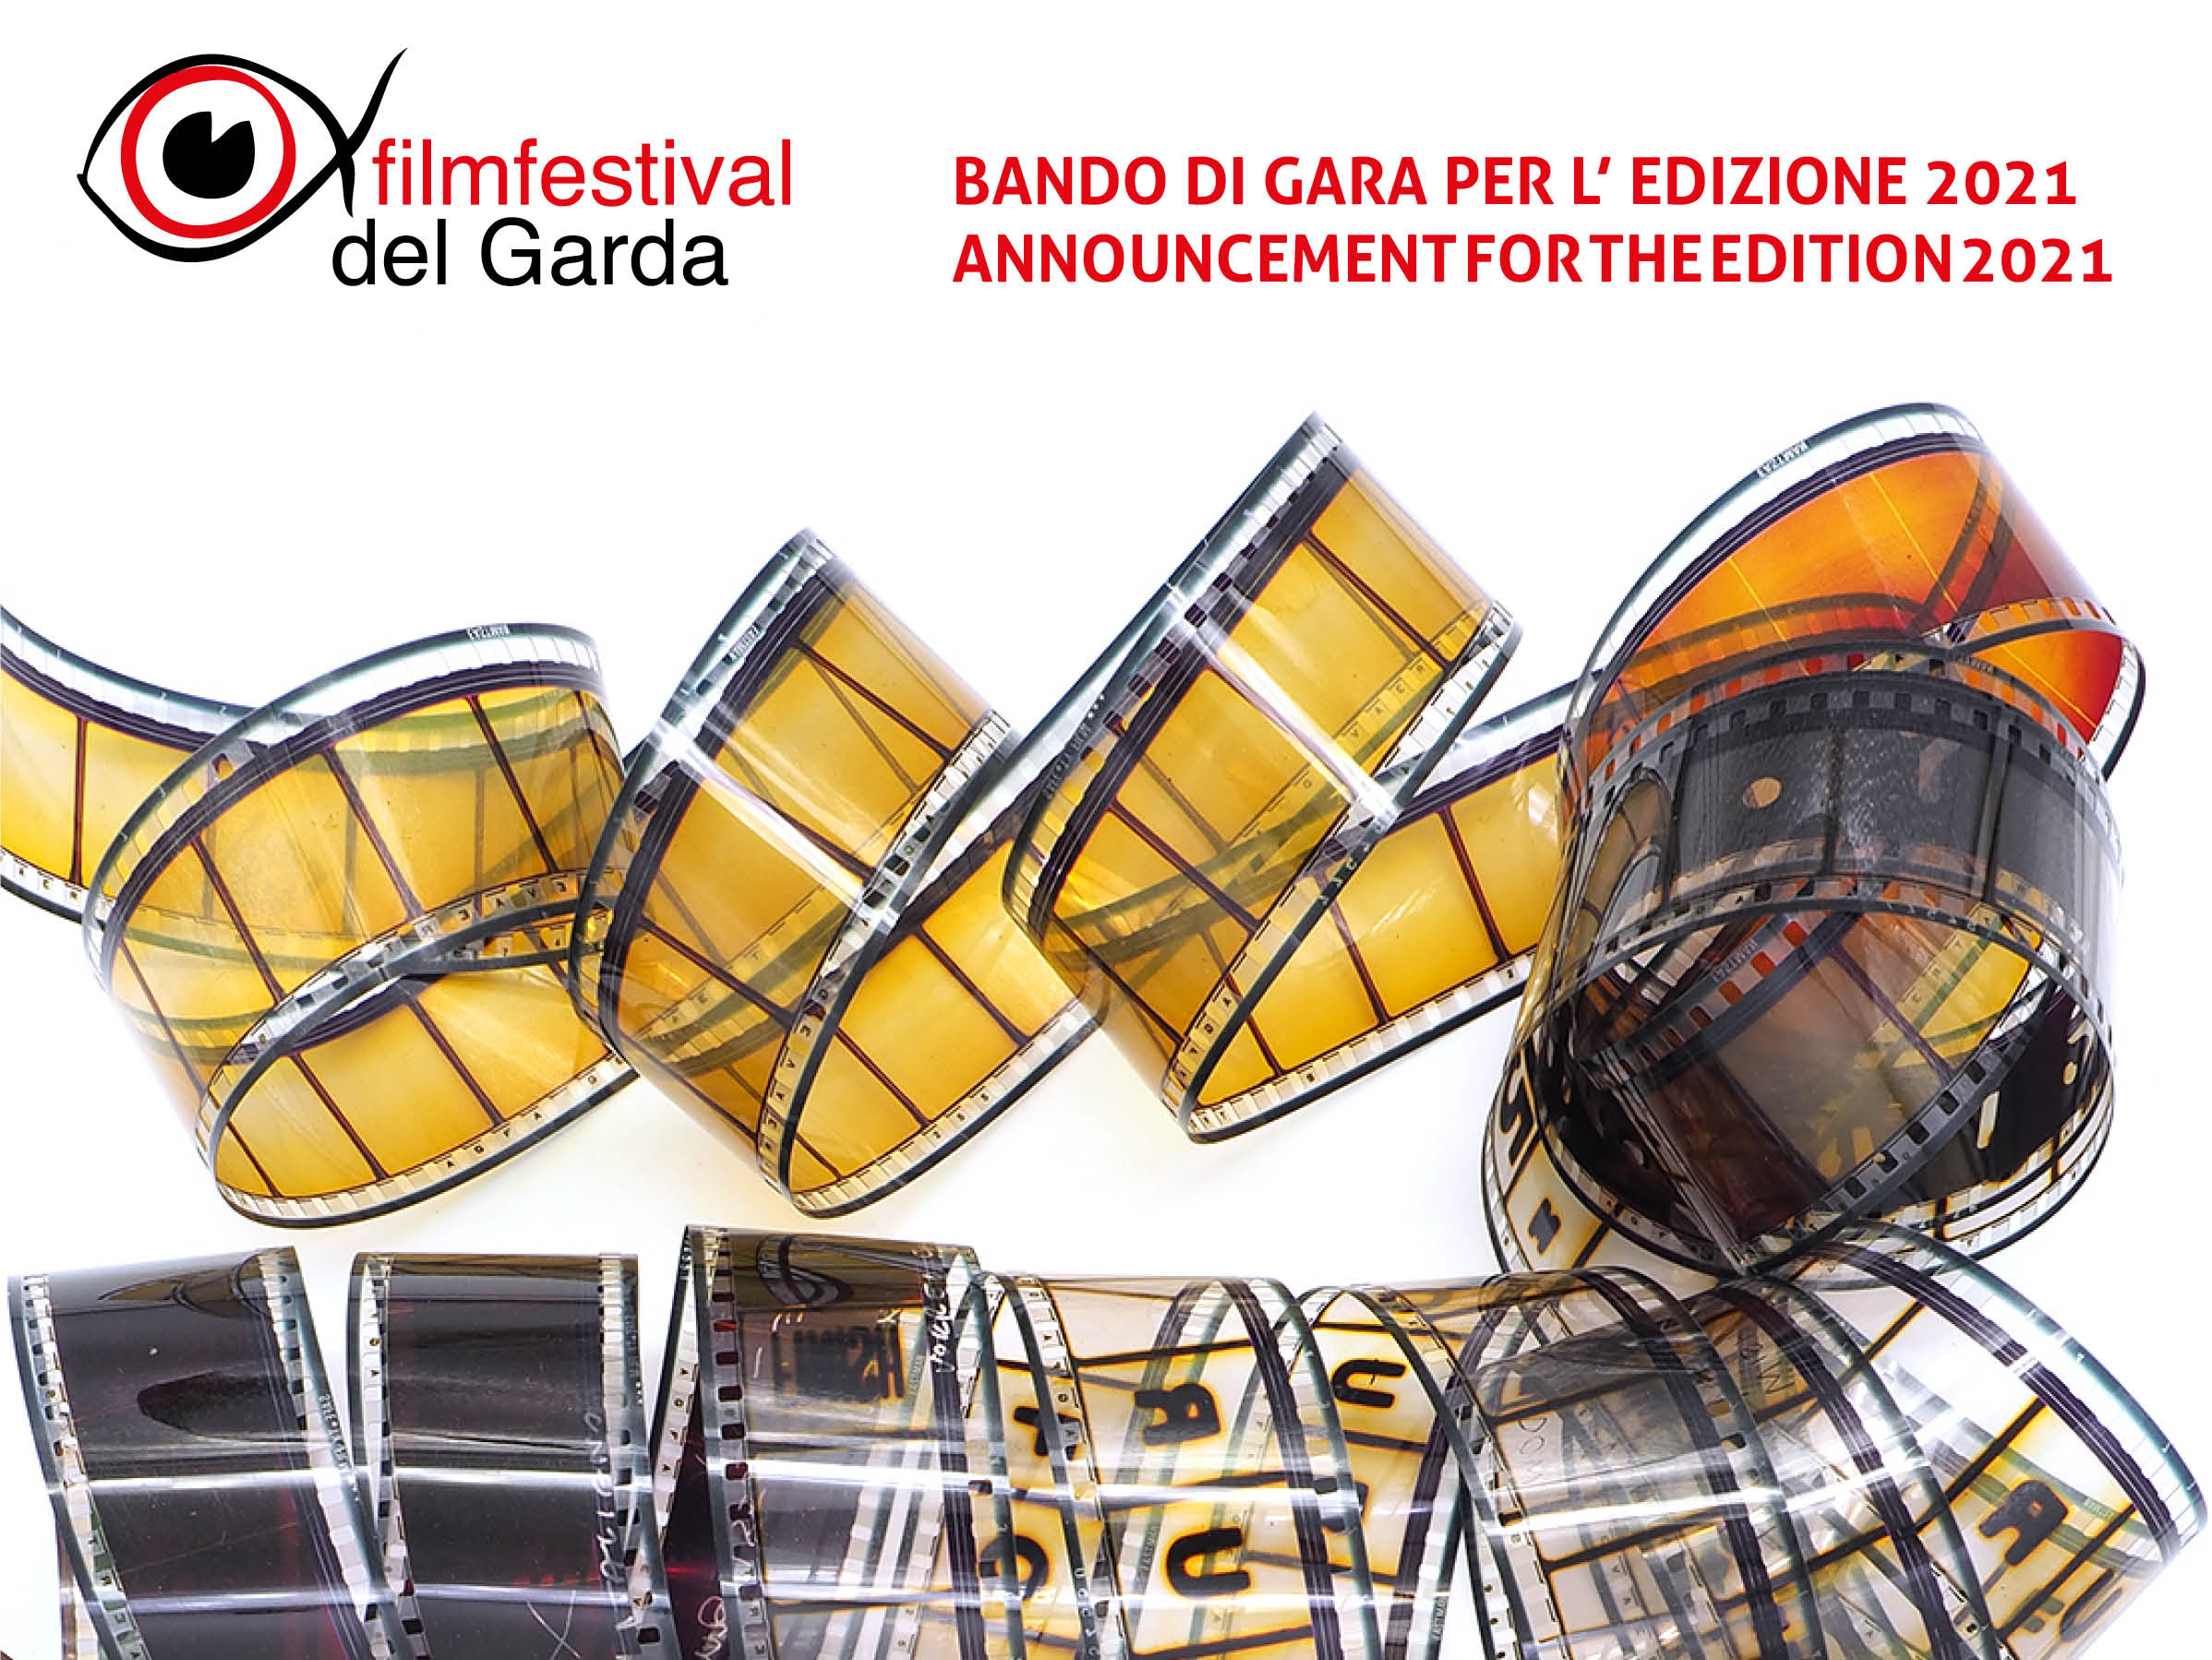 BANDO DI GARA PER L’ EDIZIONE 2021 / ANNOUNCEMENT FOR THE EDITION 2021